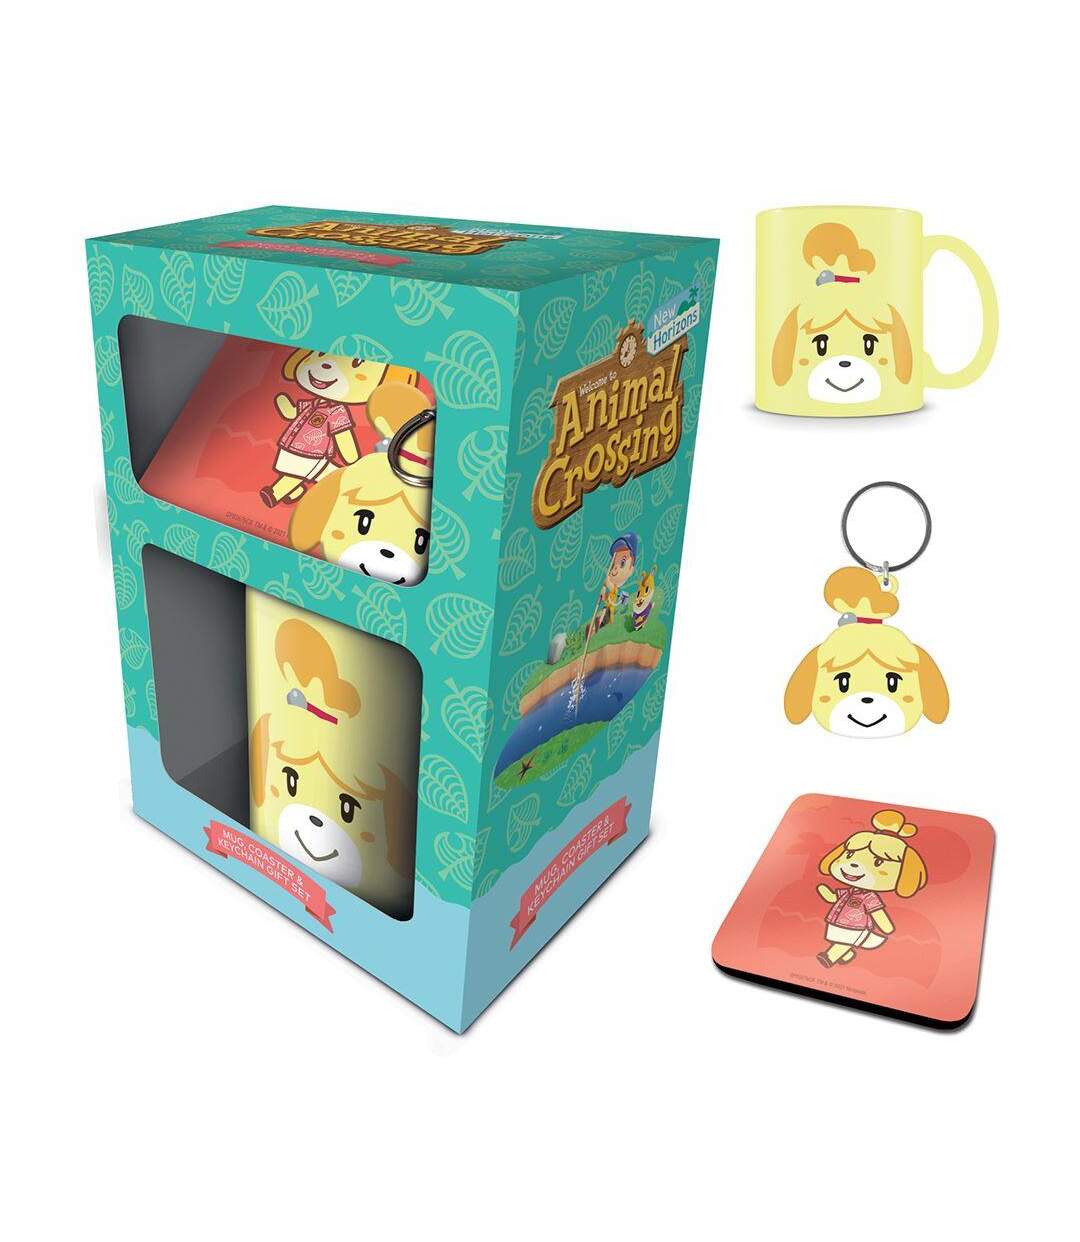 Animal Crossing Coffret cadeau Isabelle (Jaune/Rouge) (Taille unique) - UTPM3026